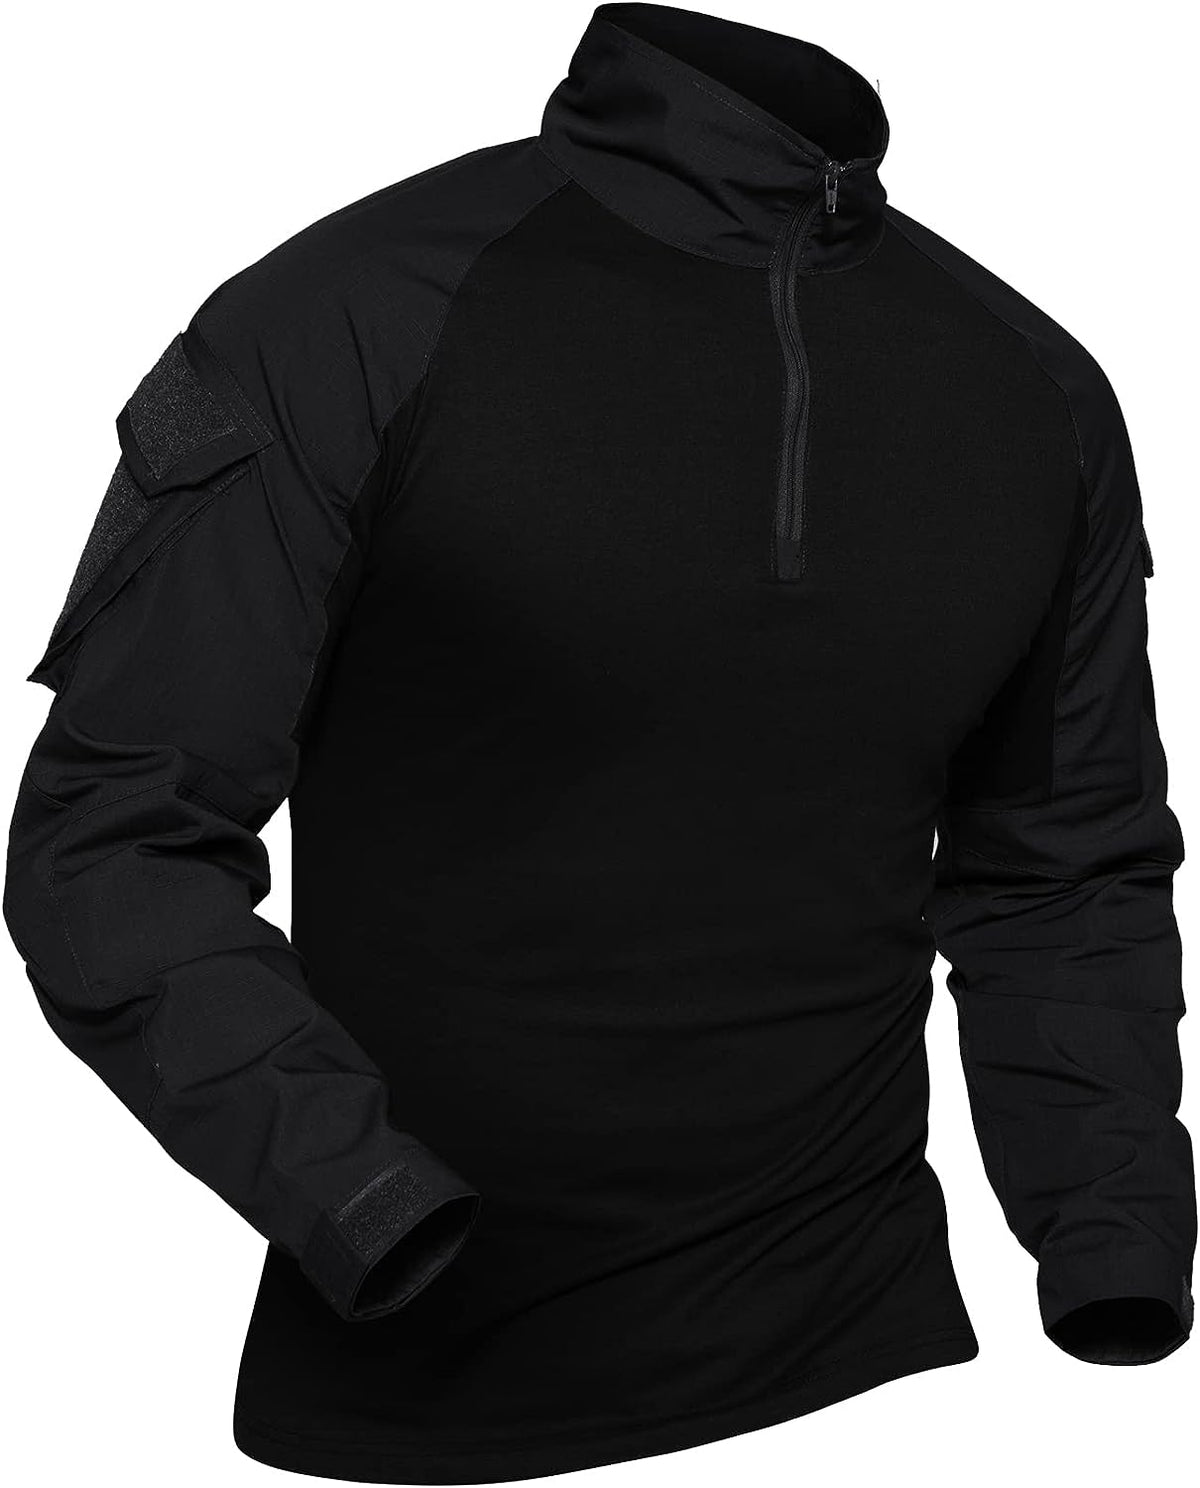 Combat Tactical Shirt for Men #Color_Black - 4 Pockets